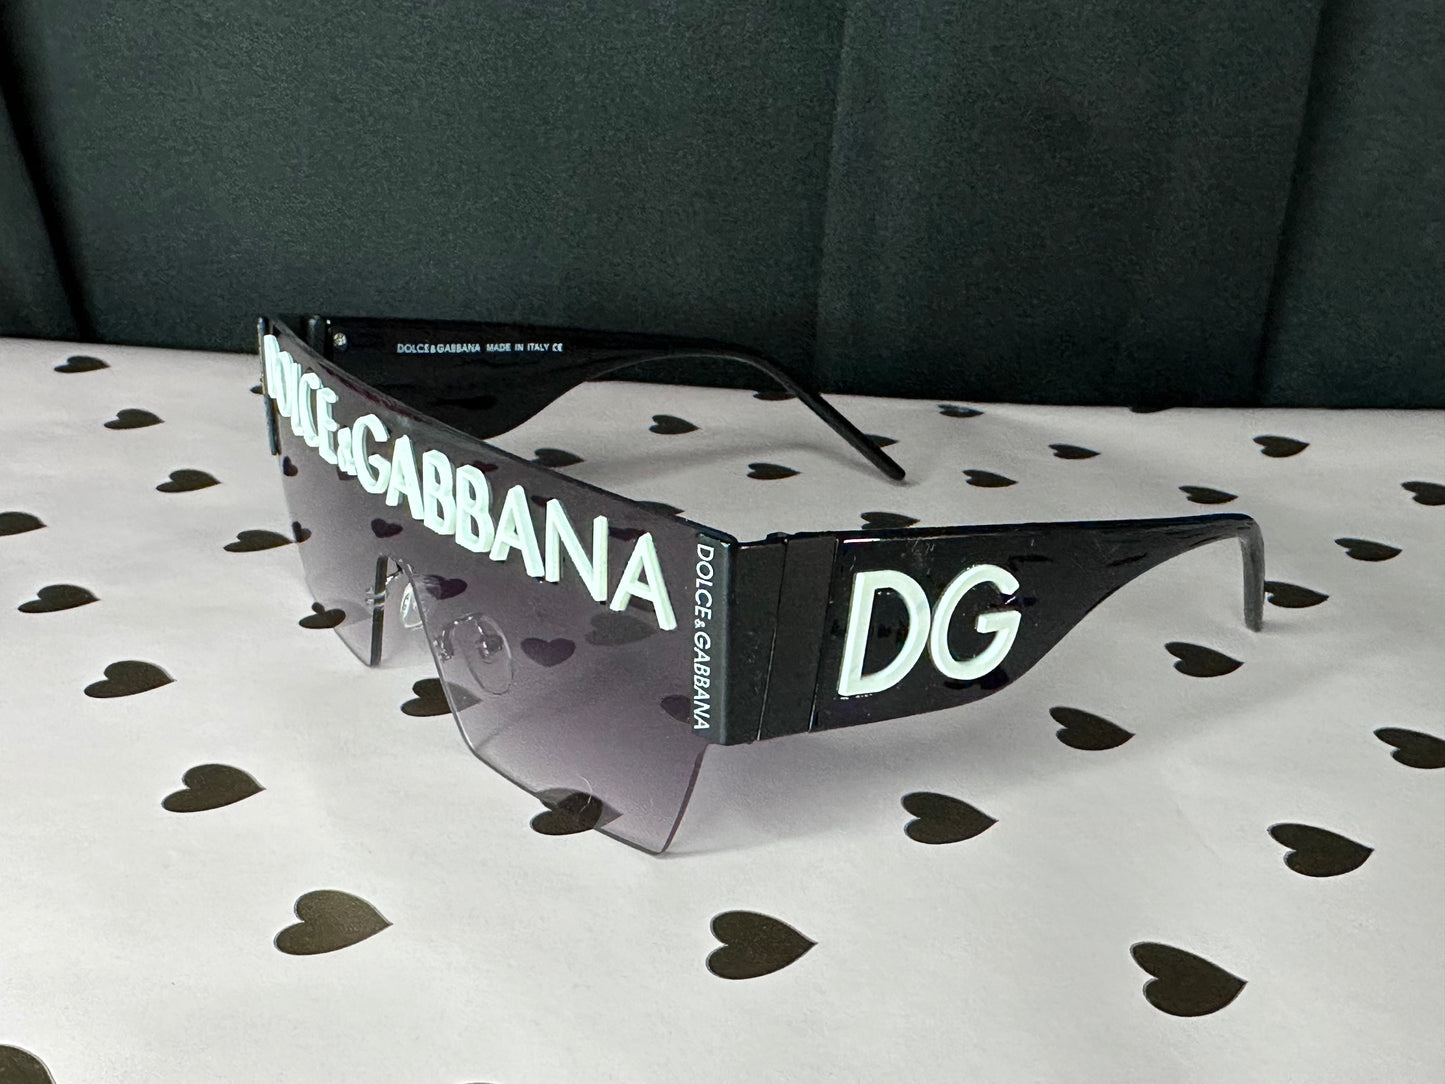 Gafas de sol de diseñador inspiradas en DG